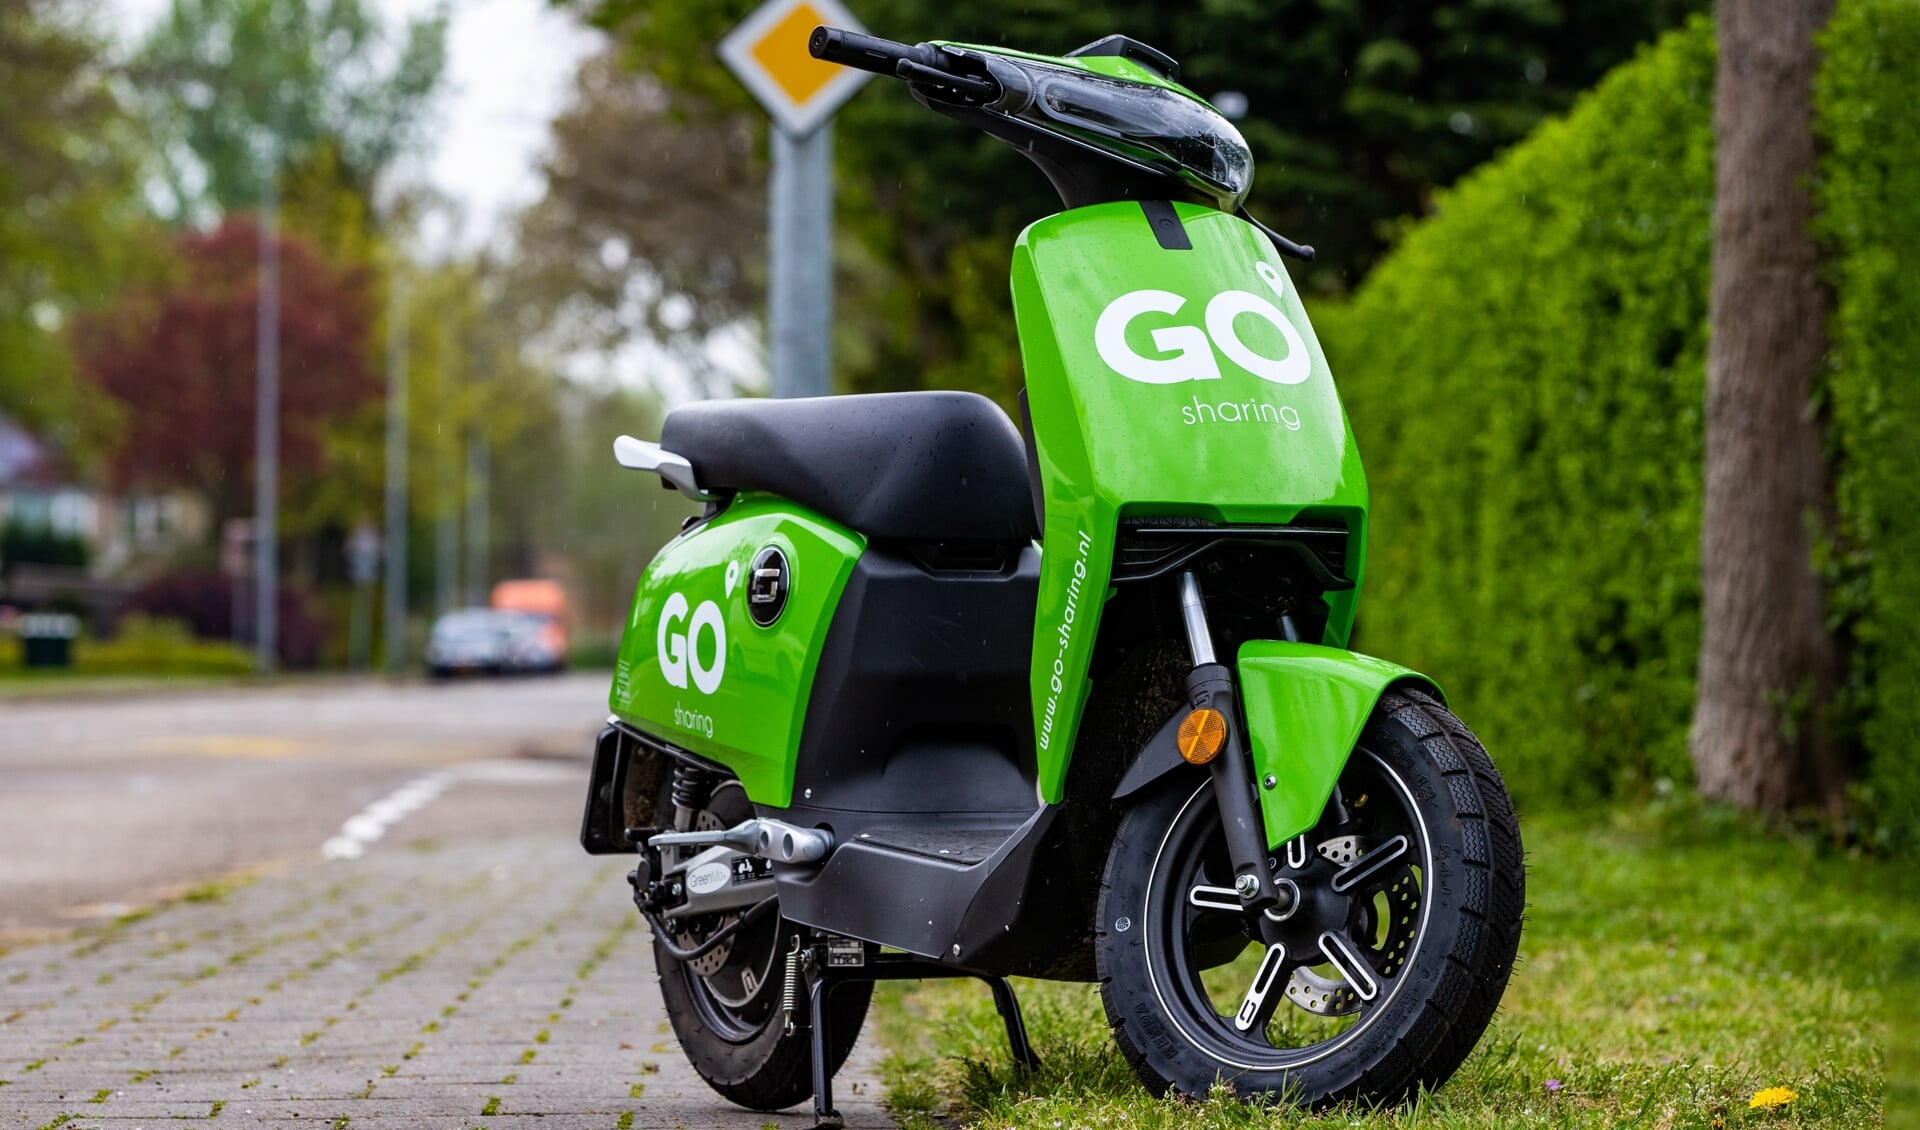 De scooters van GO Sharing rijden nu alweer een jaar door Hilversum. 